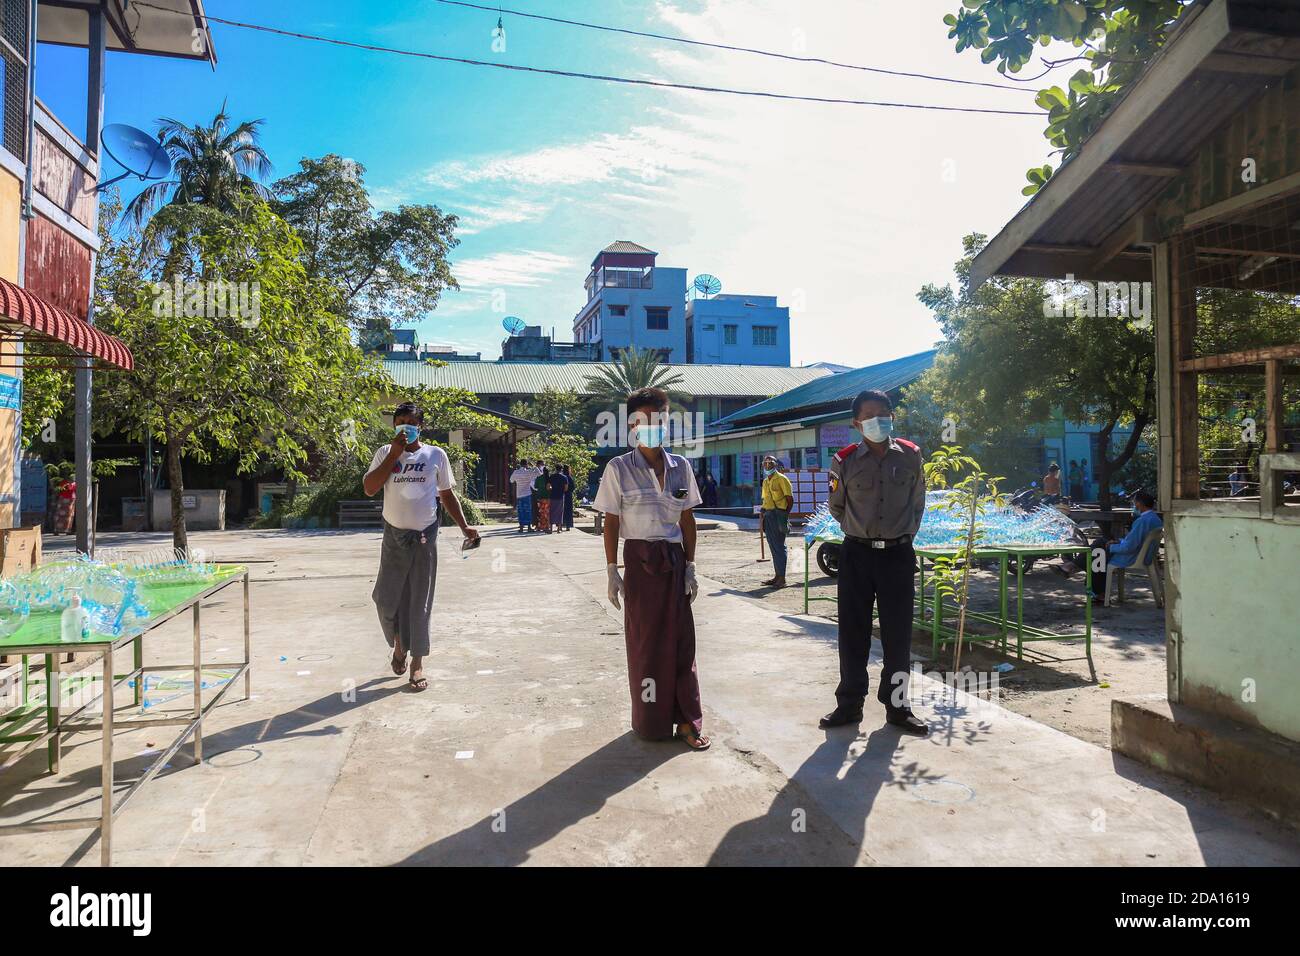 Mandalay, Myanmar. 08 novembre 2020. Un policier est garde-corps devant le bureau de vote.les citoyens du Myanmar ont voté lors de la deuxième élection démocratique depuis la fin du régime militaire, Aung San Suu Kyi étant prévu que la Ligue nationale pour la démocratie (NLD) remporte les élections. Crédit : SOPA Images Limited/Alamy Live News Banque D'Images